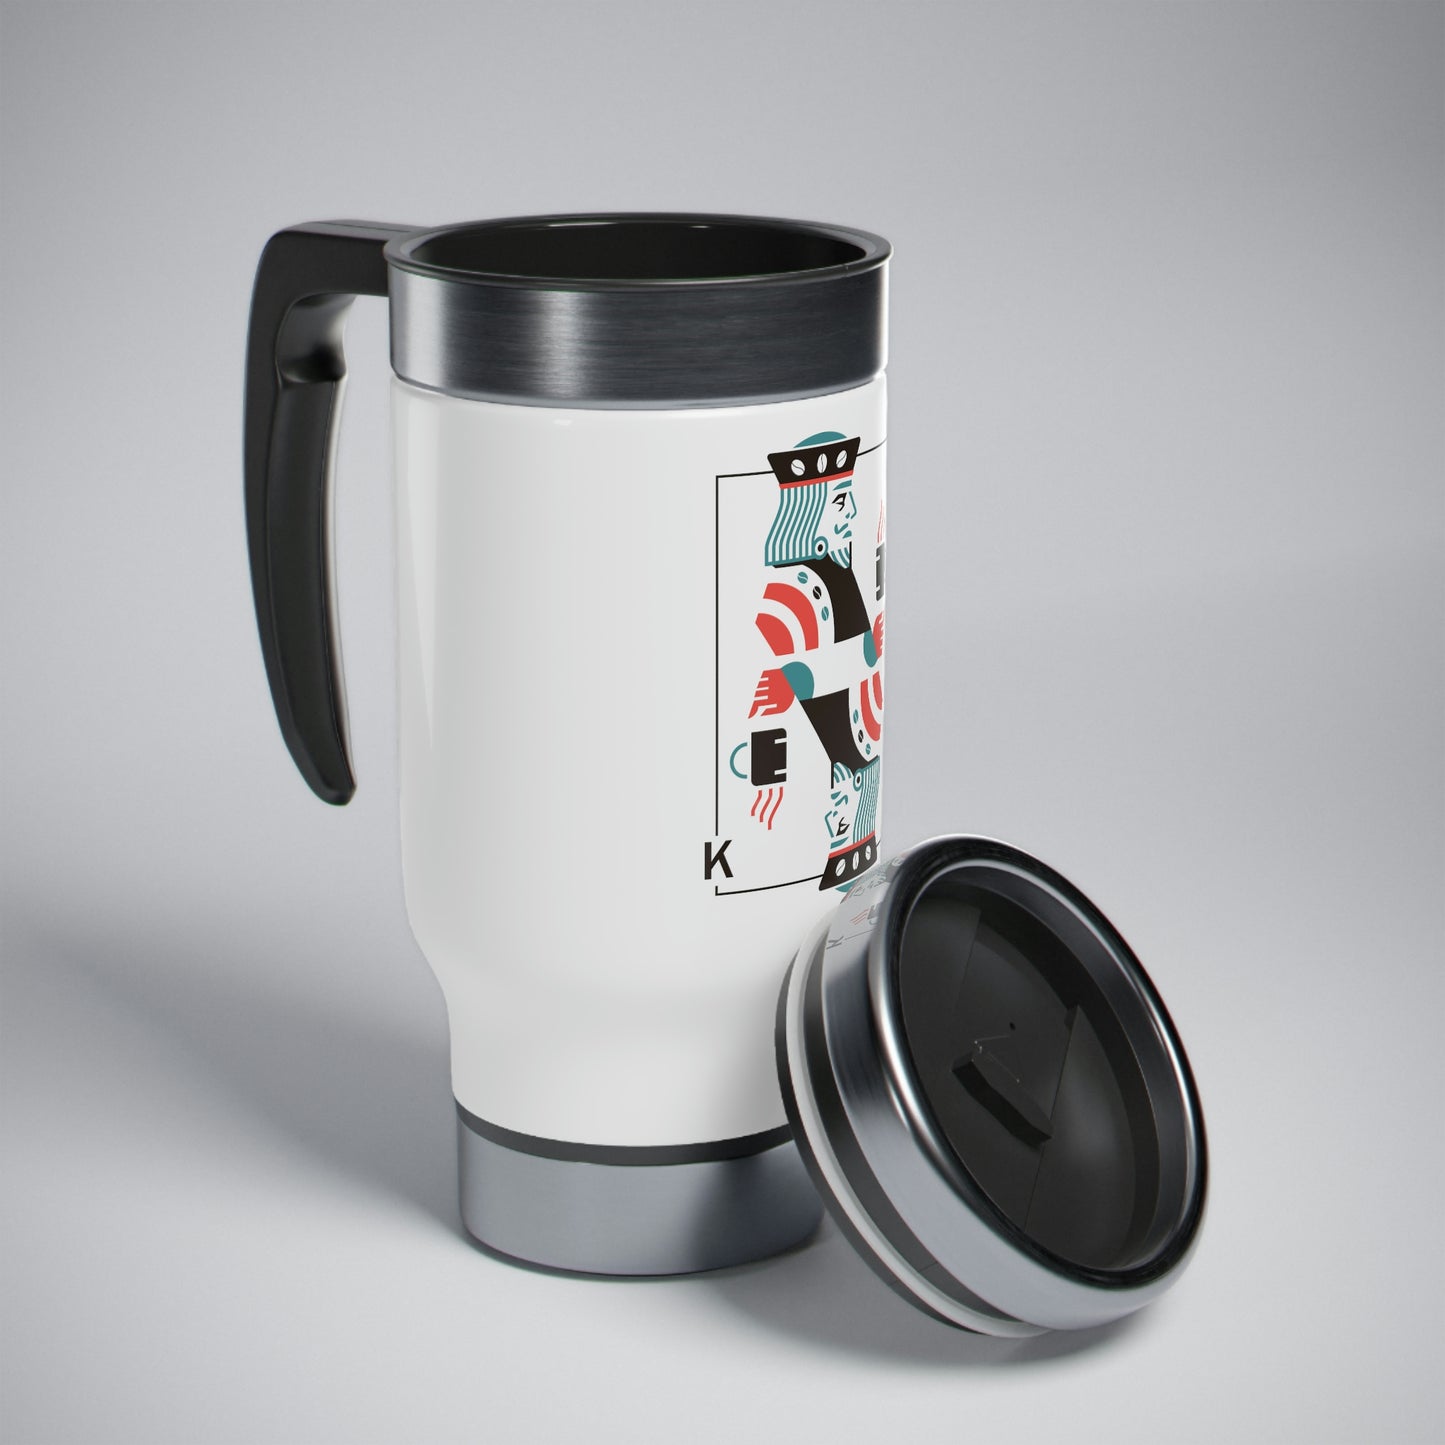 Kings & Coffee Travel Mug with Handle, 14oz